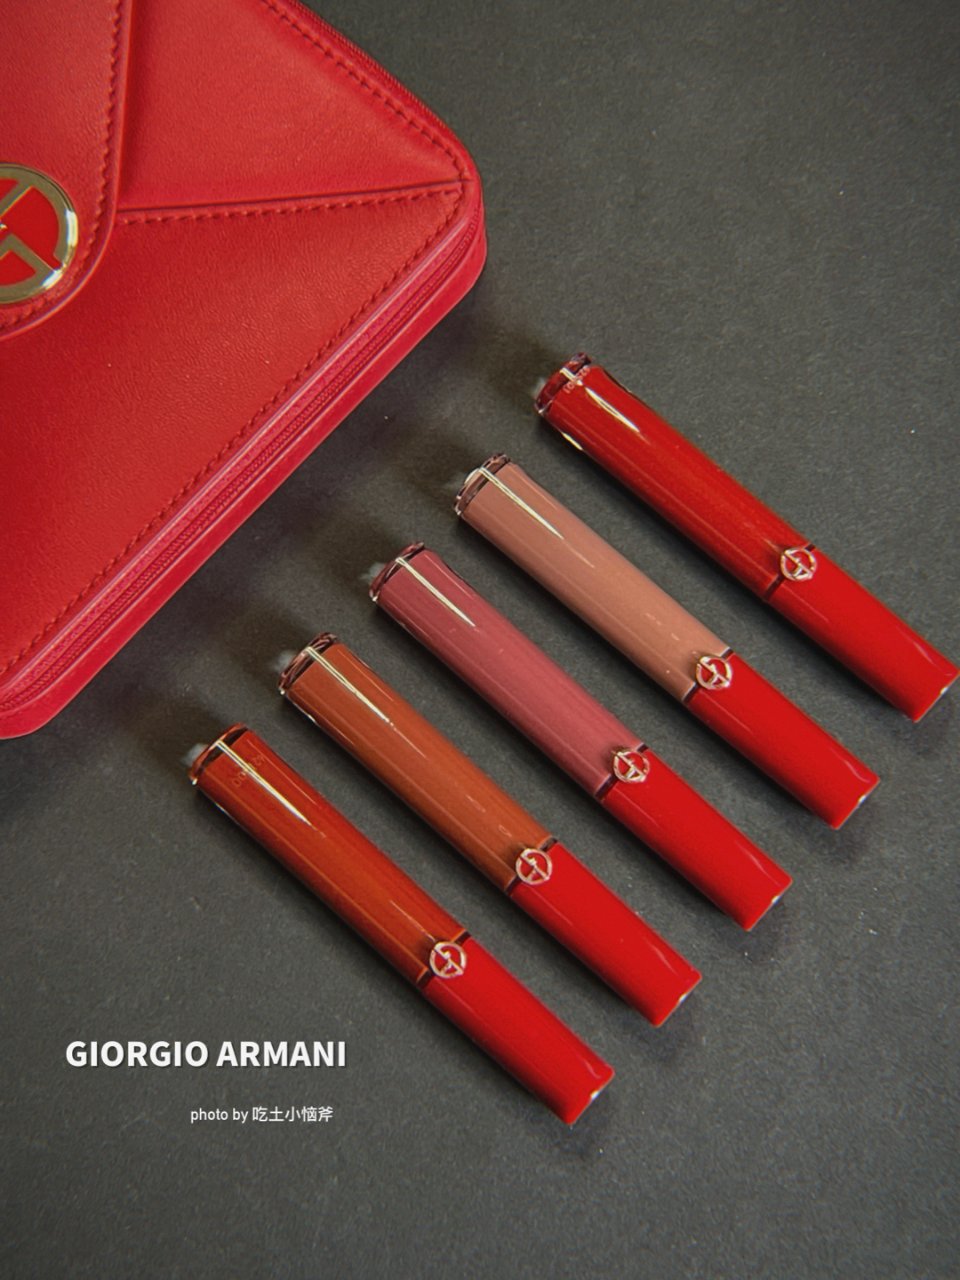 Armani Lip Maestro Bento Box Set | Giorgio Armani Beauty